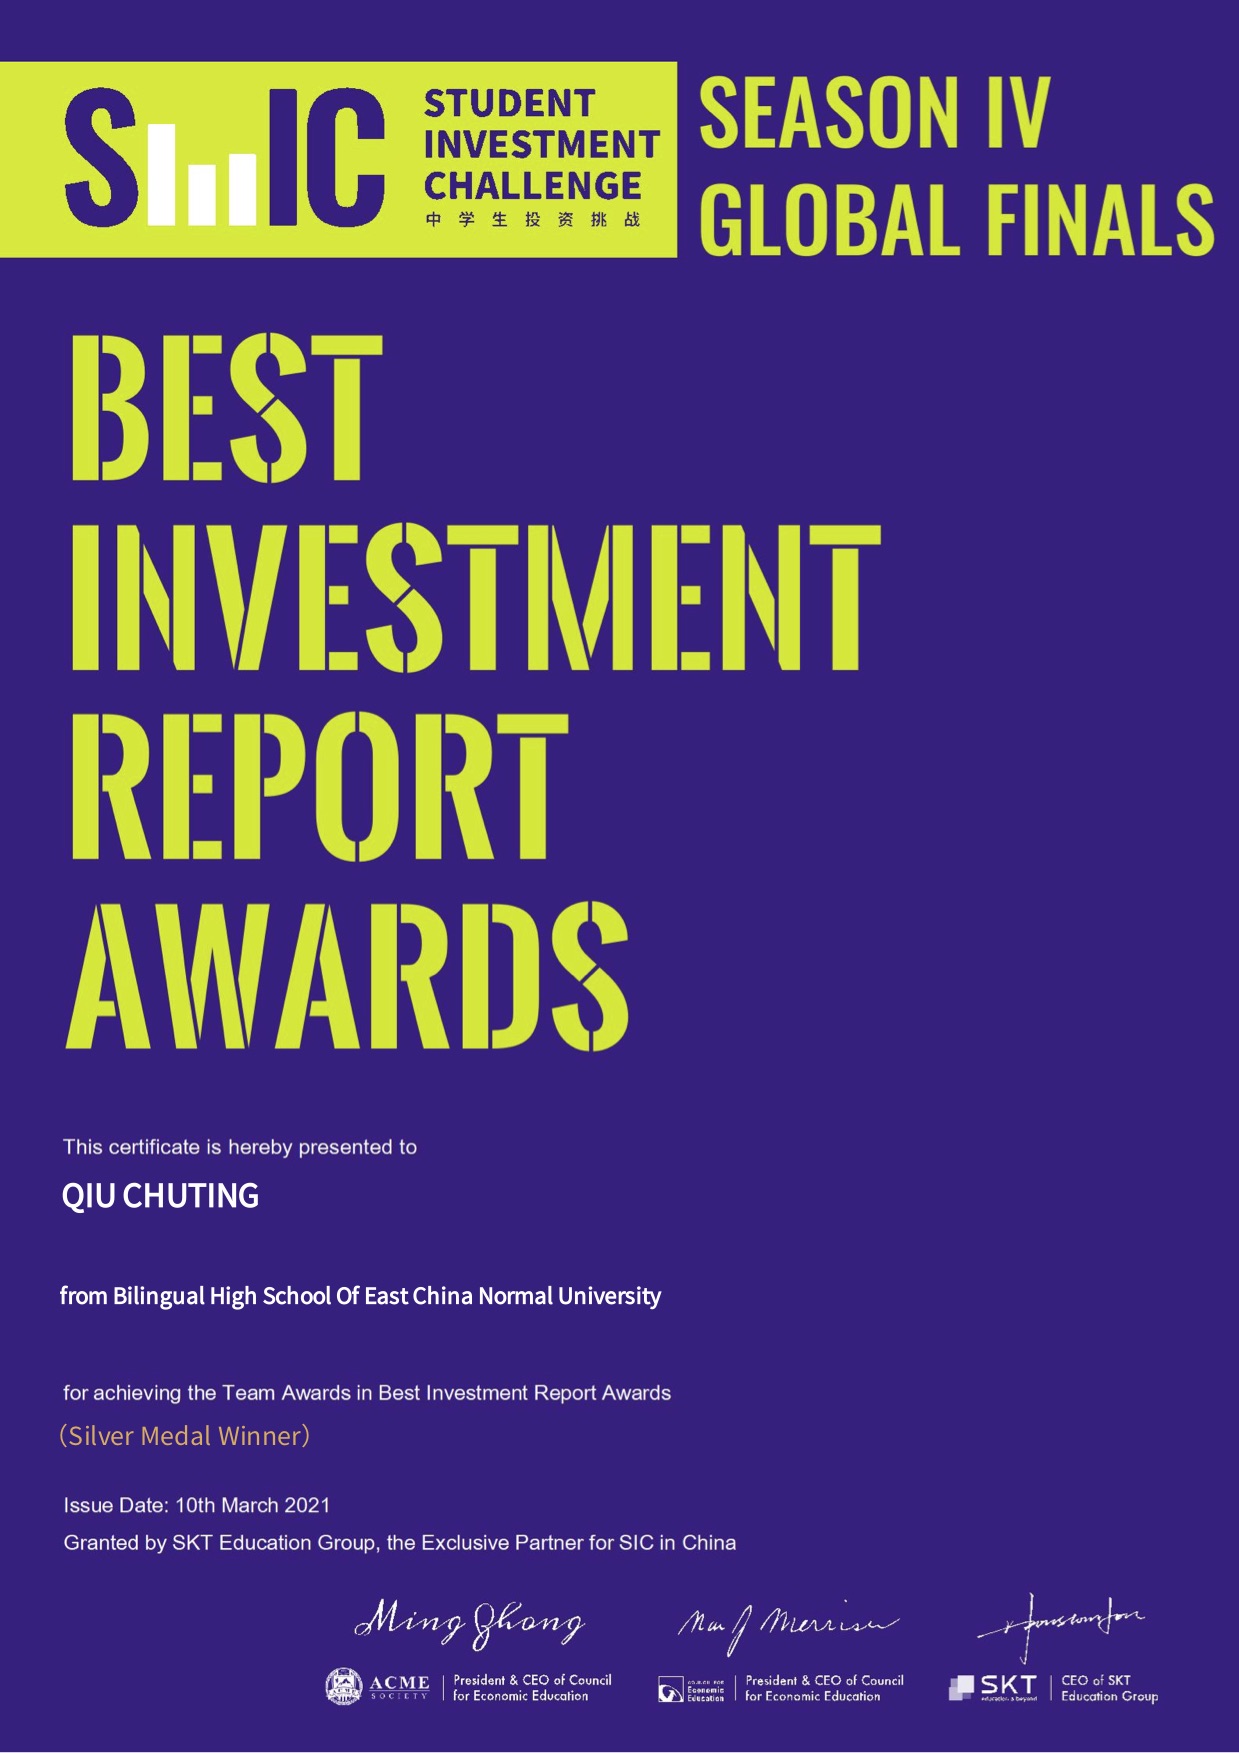 团队-Best Investment Report Awards.jpg